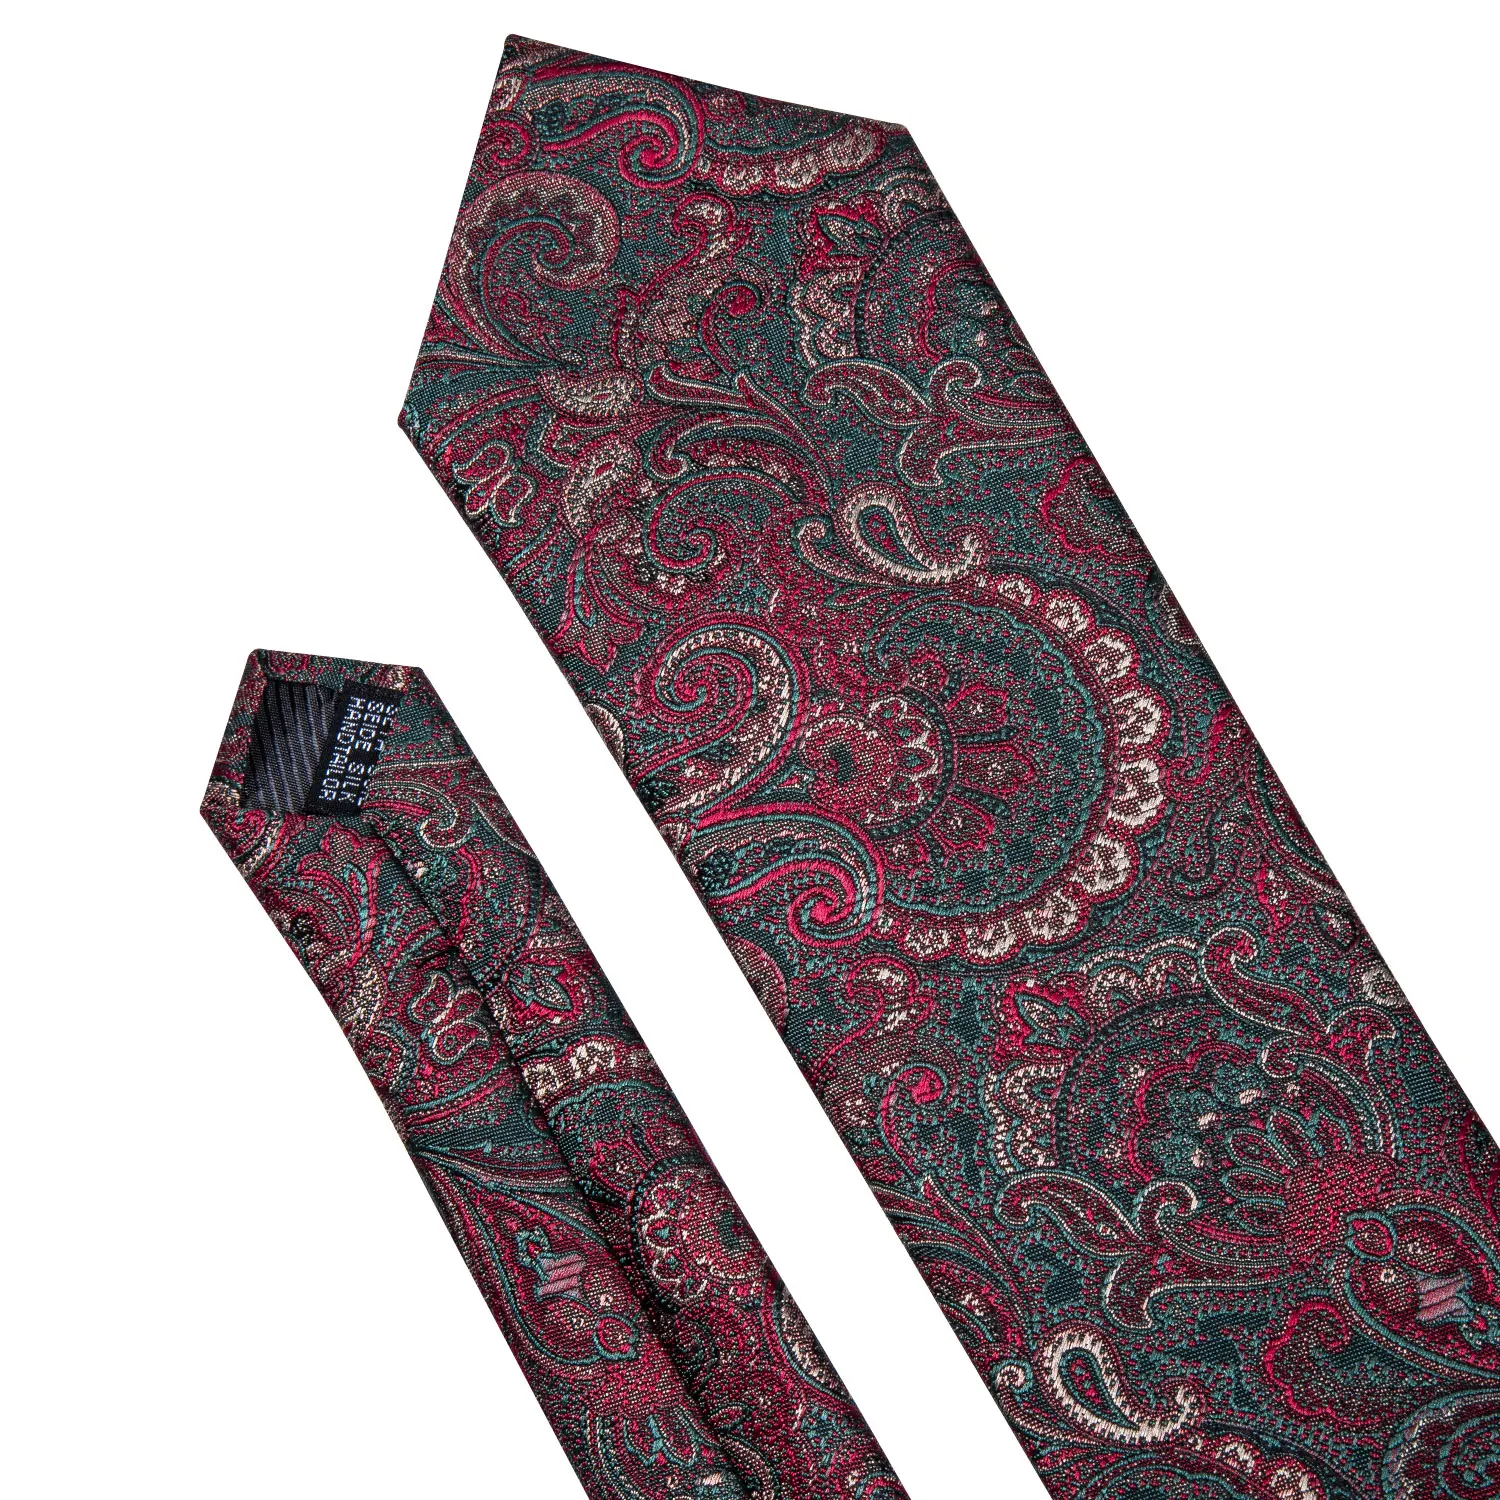 Barry. Wang мужские галстуки шелковый галстук красный зеленый галстук платок с узором пейсли запонки цветочный галстук для бизнеса Свадебная вечеринка FA-5159